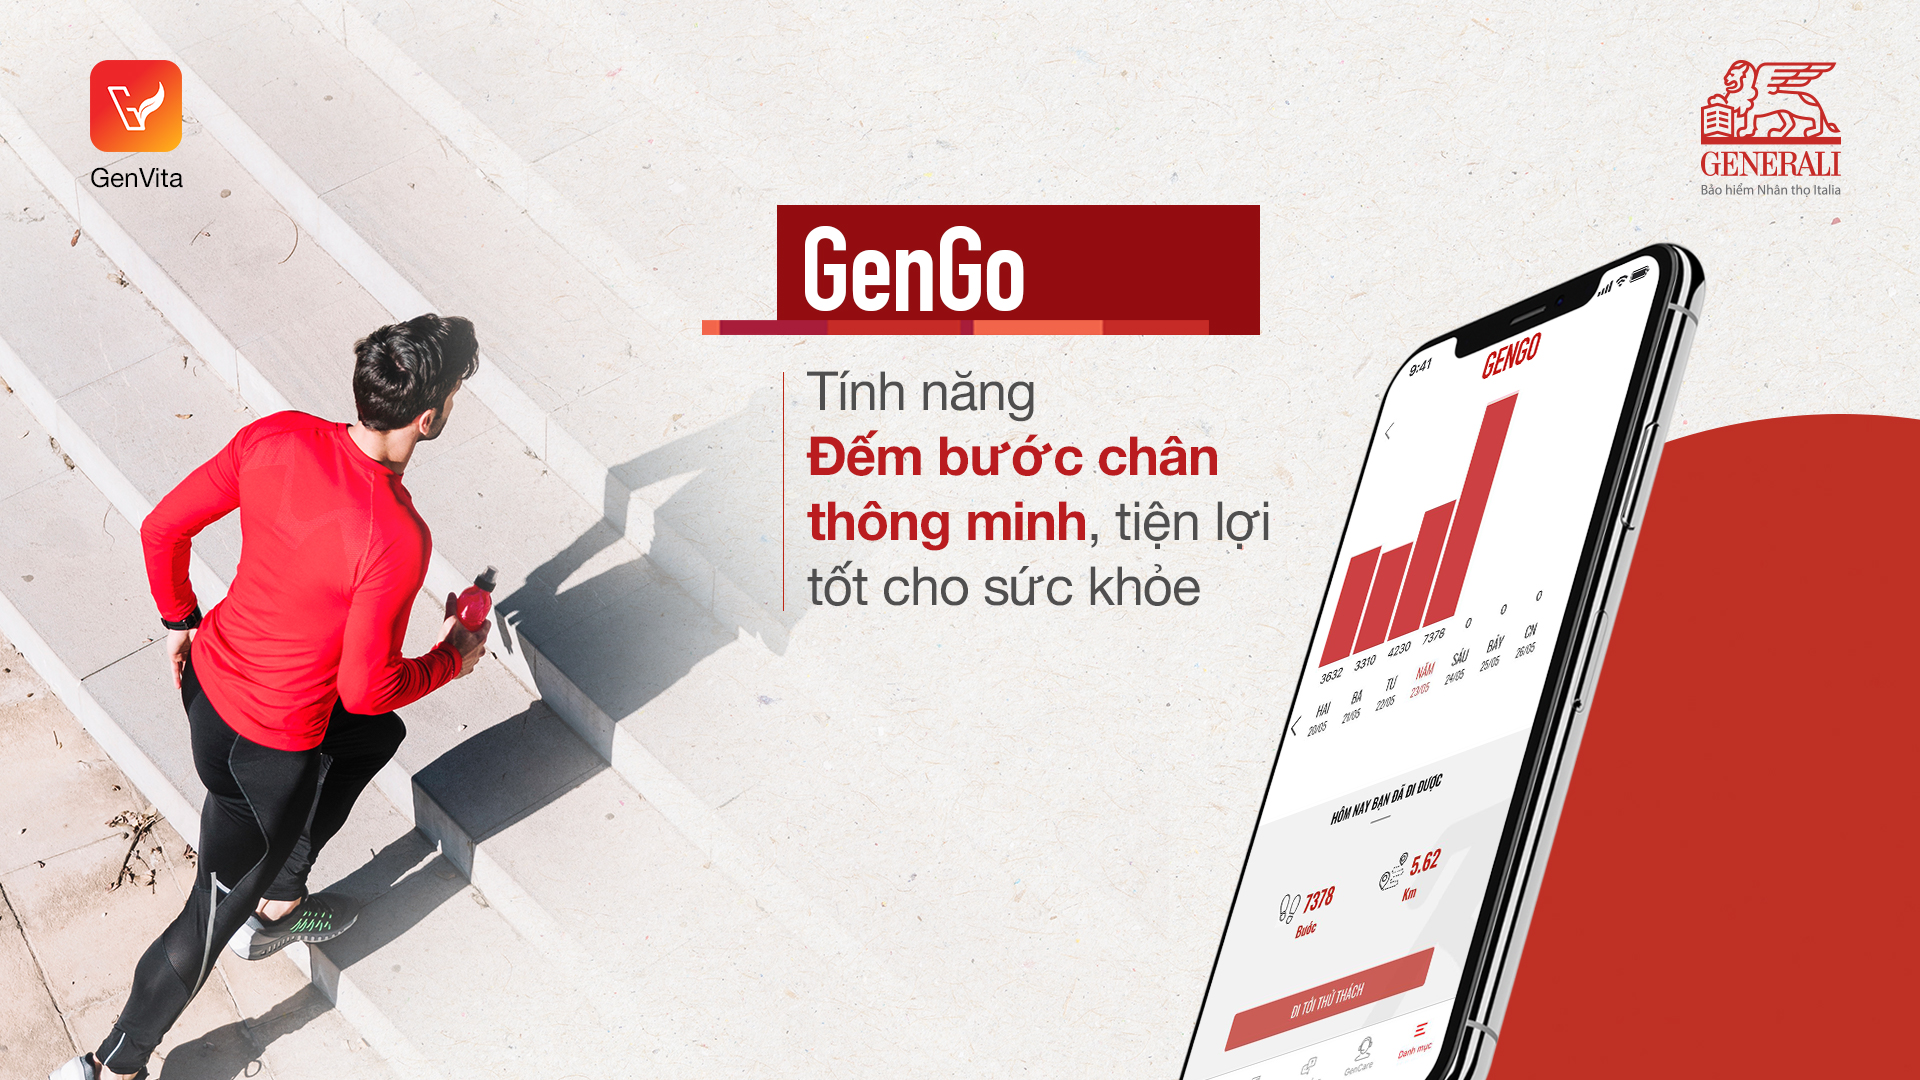 Phiên bản ứng dụng GenVita mới được cập nhật mang đến cho bạn một cuộc sống như ý thực sự với 2 tính năng mới là GenGo và Alo Dr. Gen